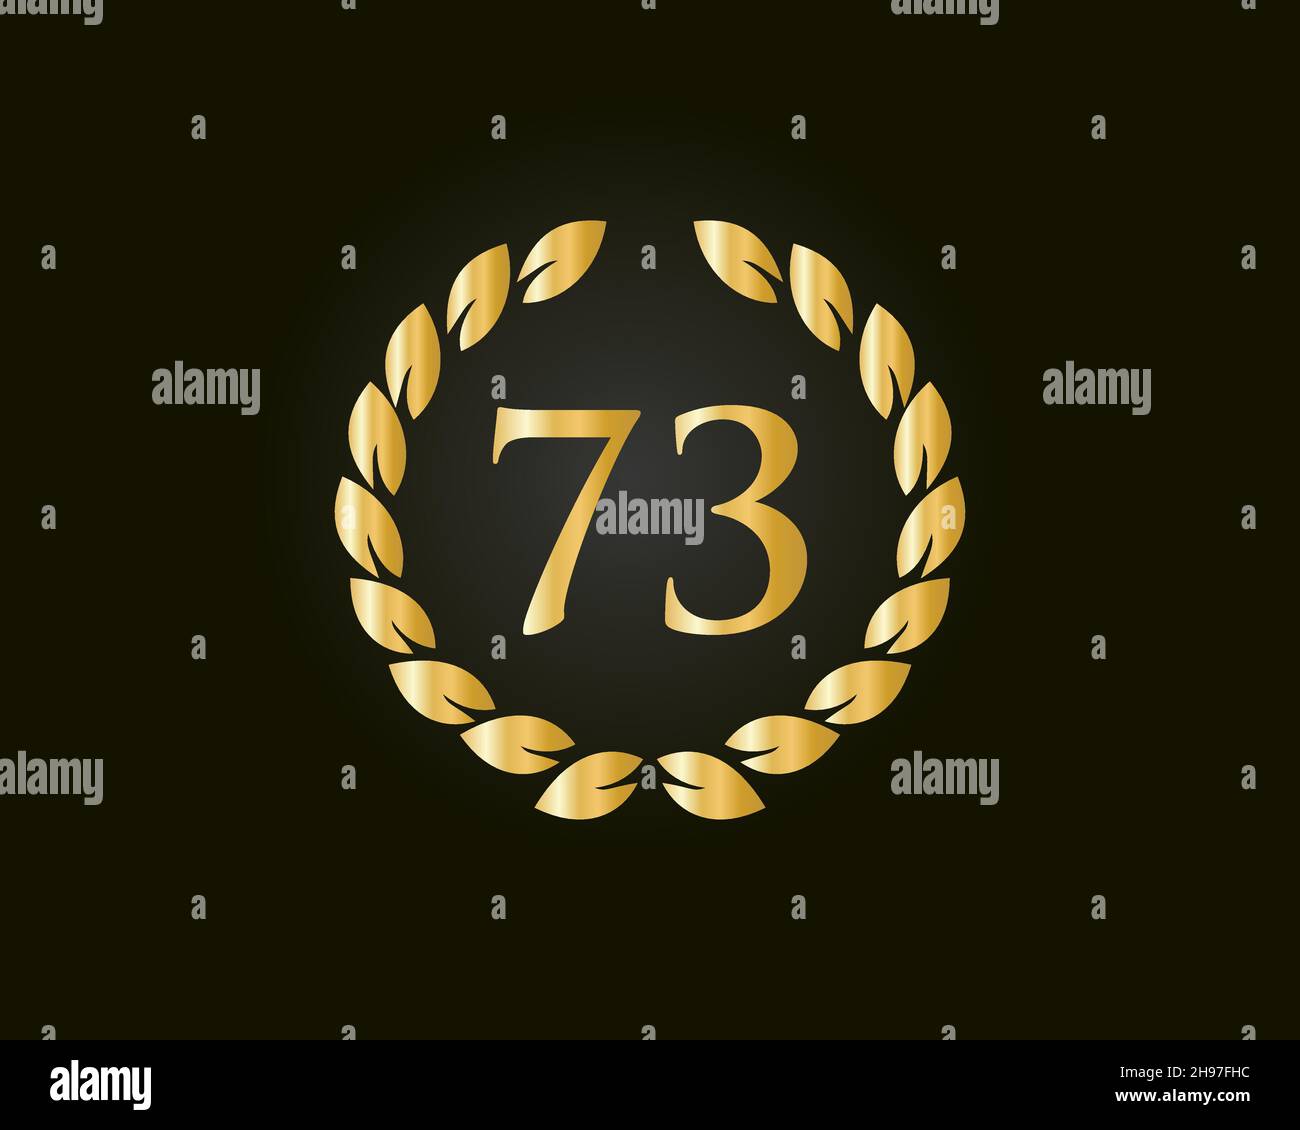 Modello di logo Anniversary Ring 73. Logo 73 anni anniversario con anello d'oro isolato su sfondo nero, per compleanno, anniversario e Società Illustrazione Vettoriale